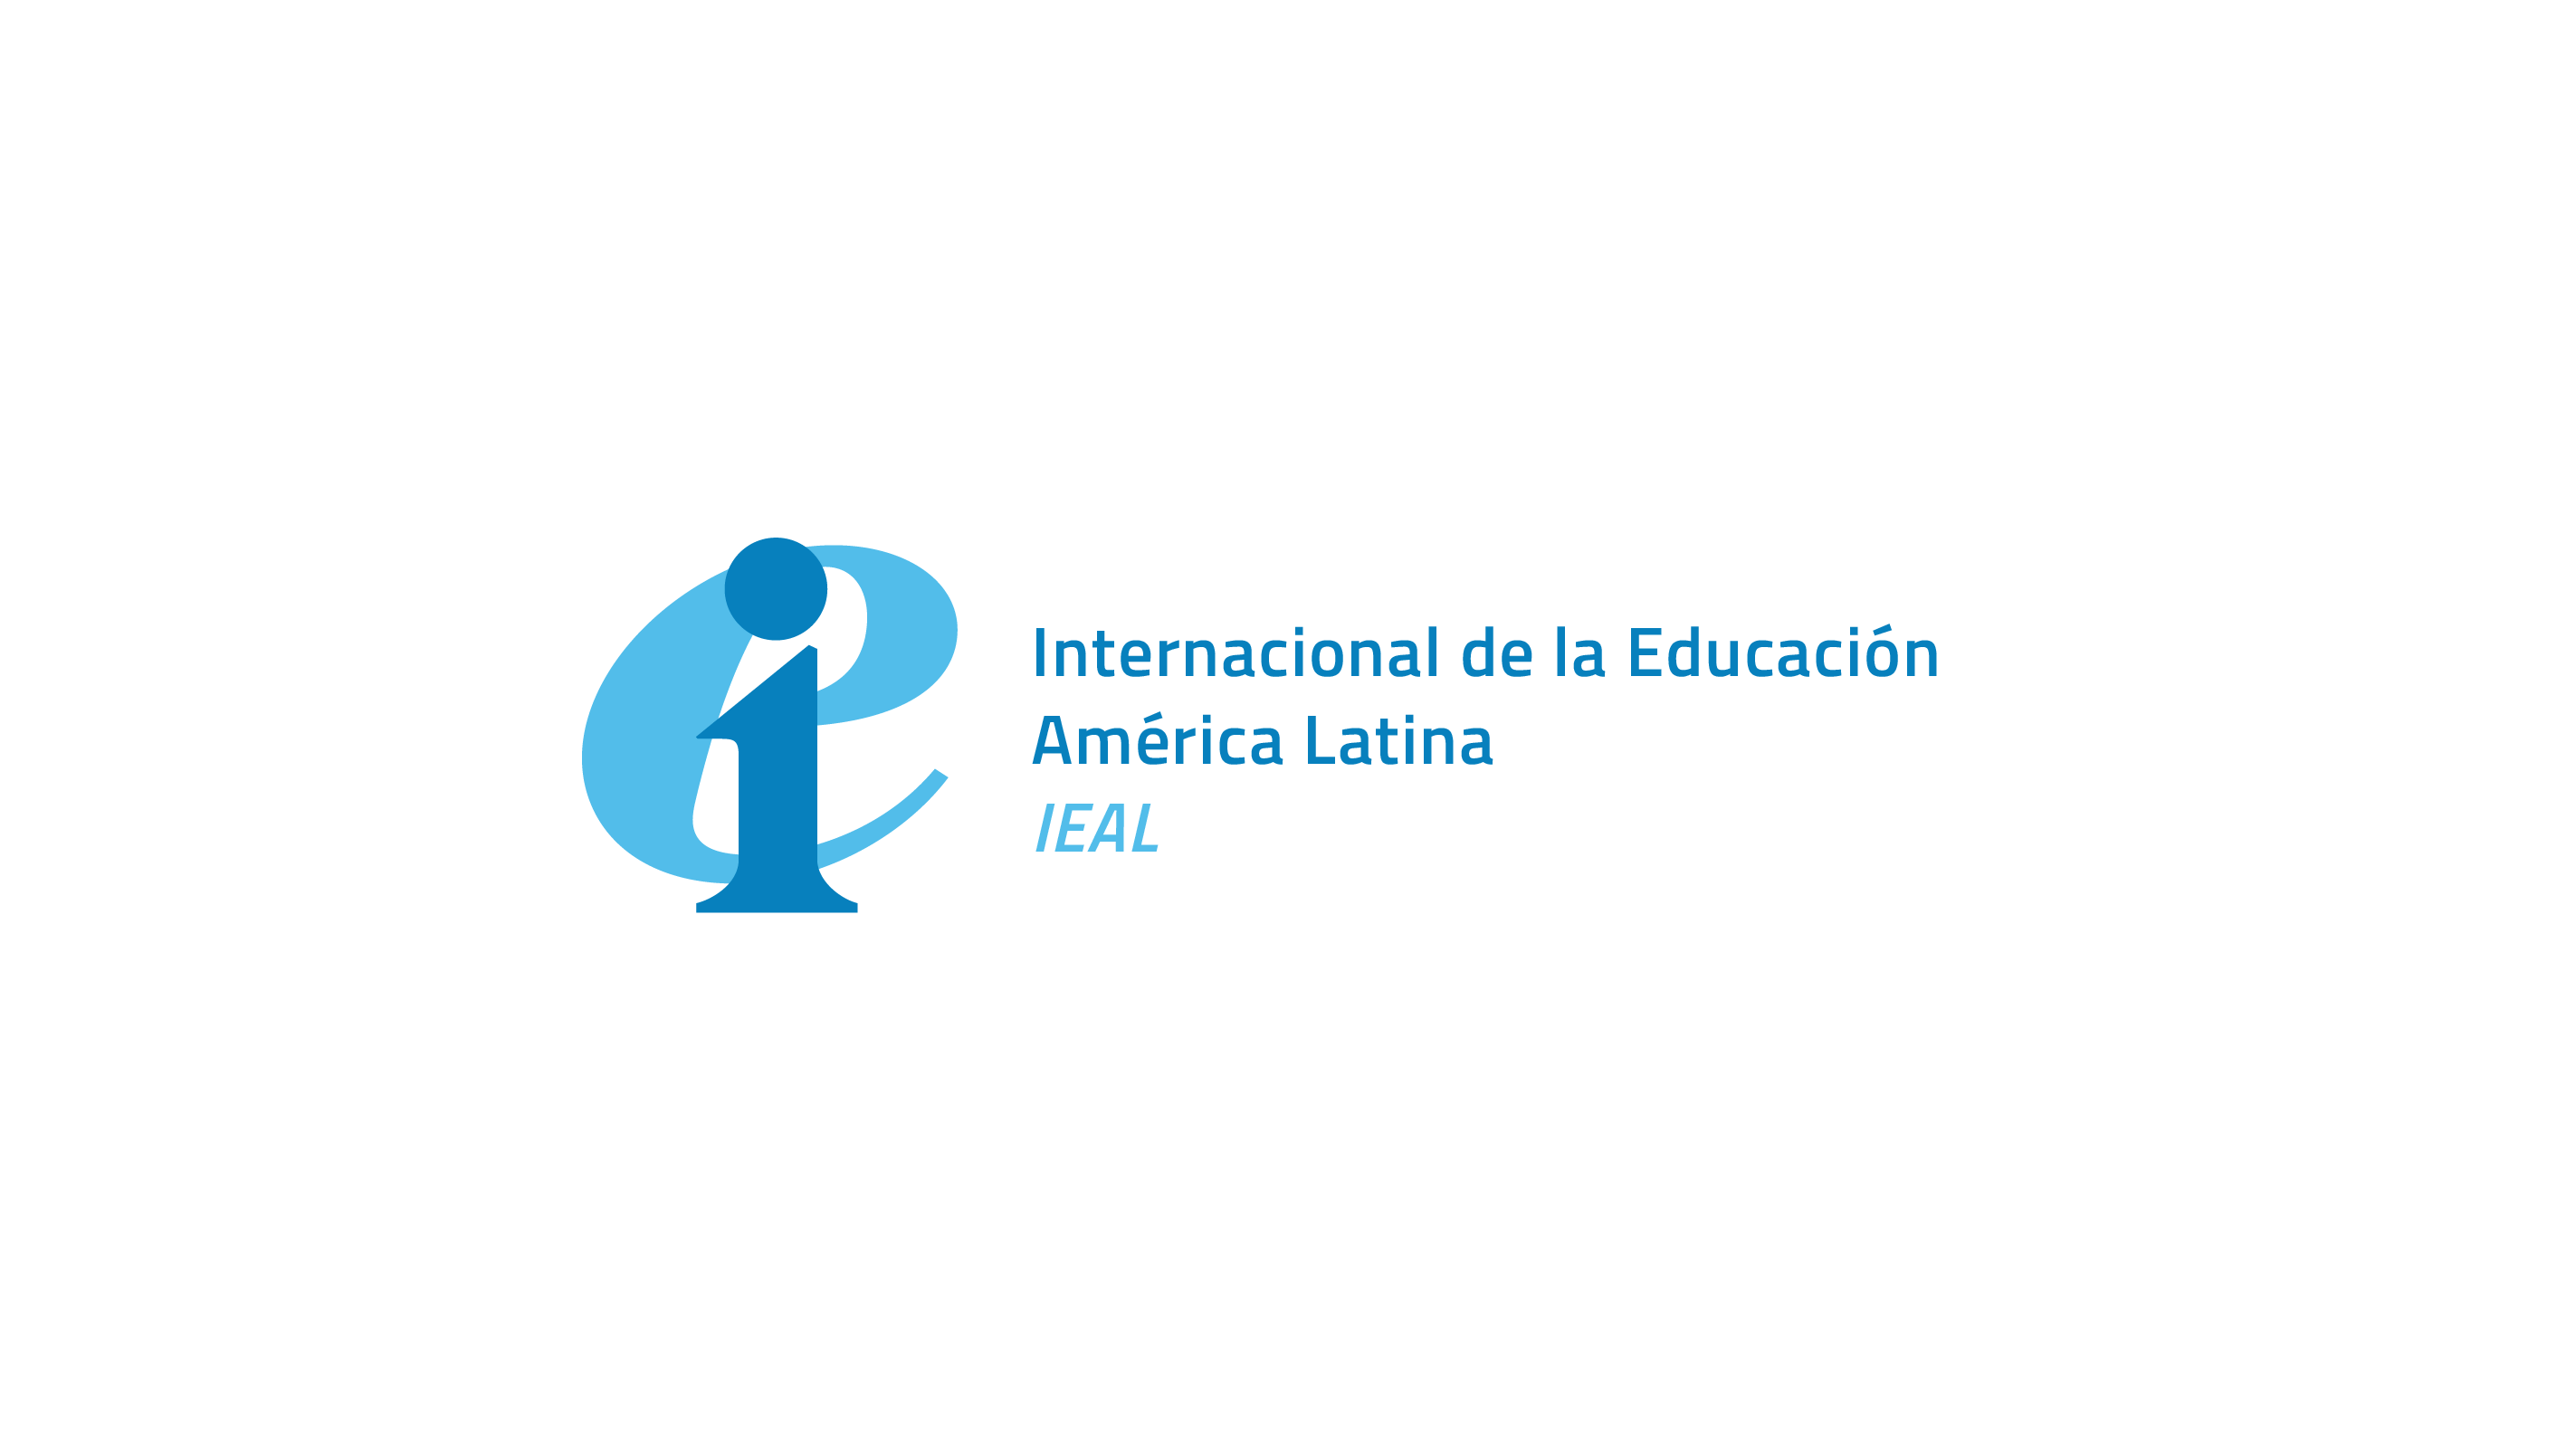 Oficina Regional de la Internacional de la Educación en receso